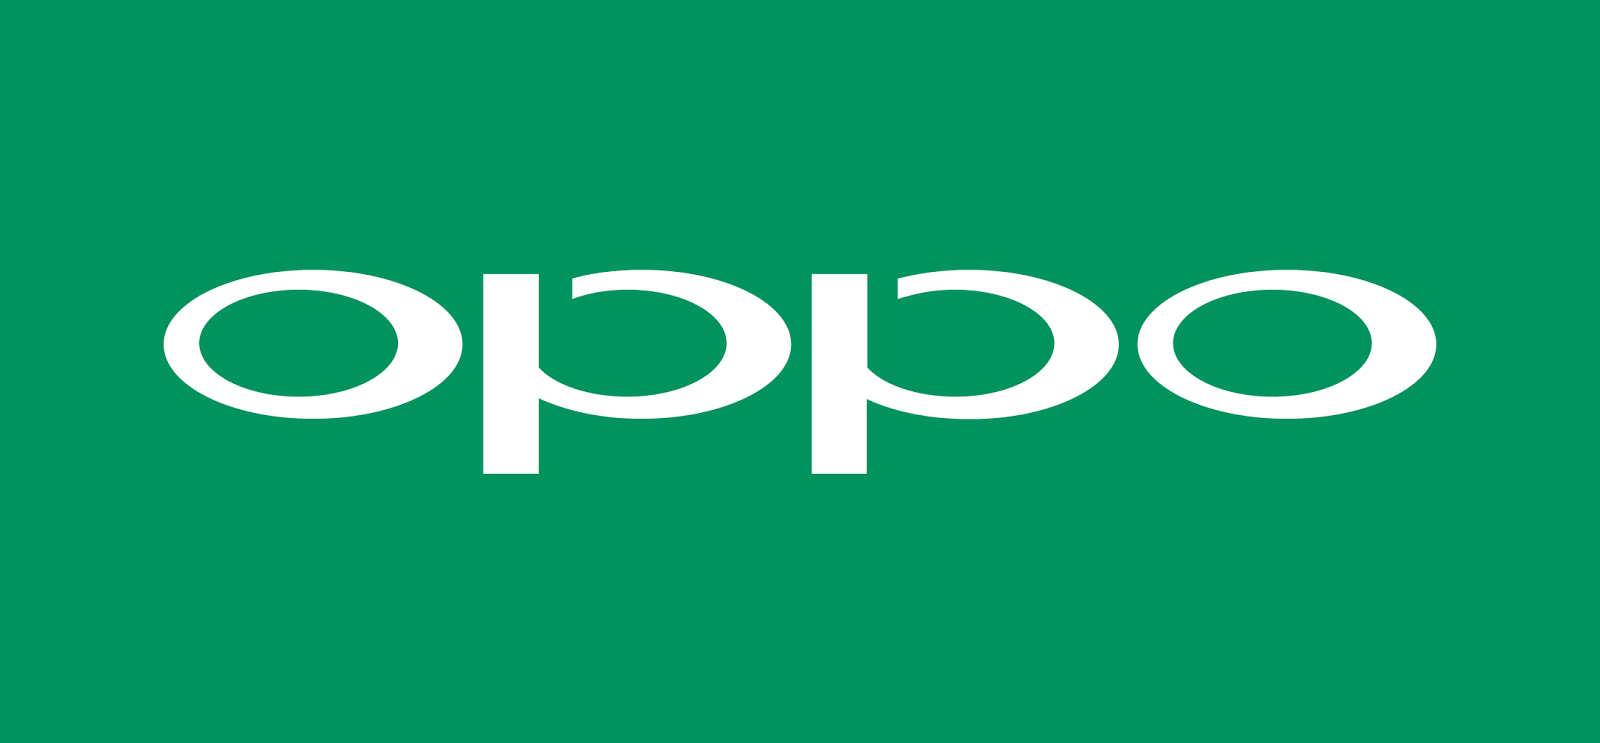 Daftar Harga HP Android Oppo Cellular Market Denpasar